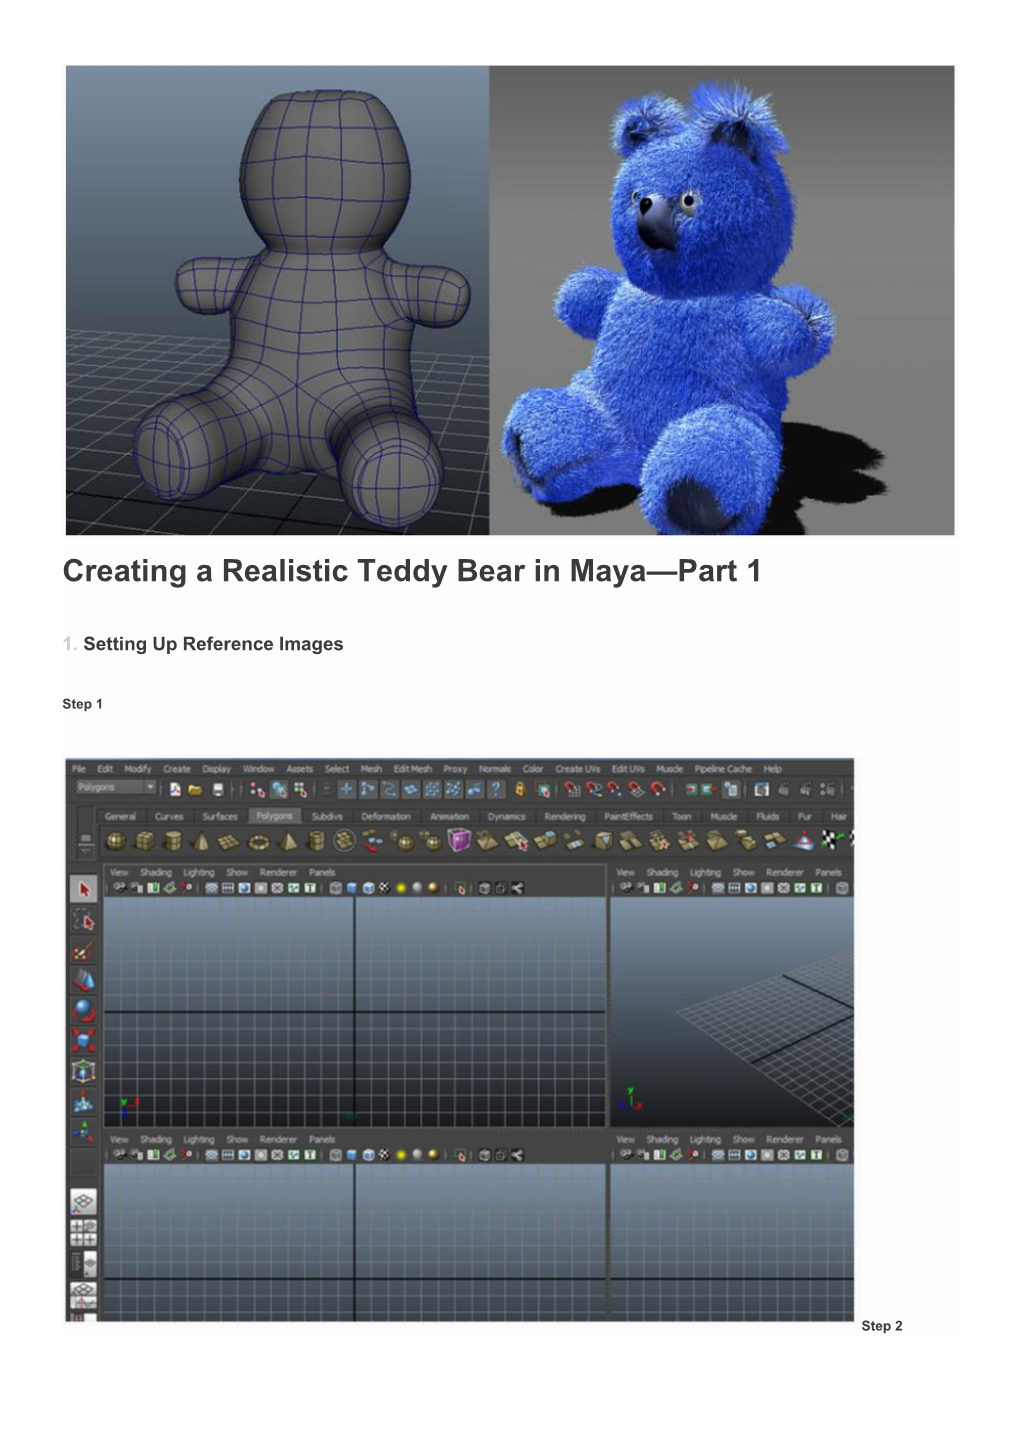 Creating a Realistic Teddy Bear in Maya—Part 1